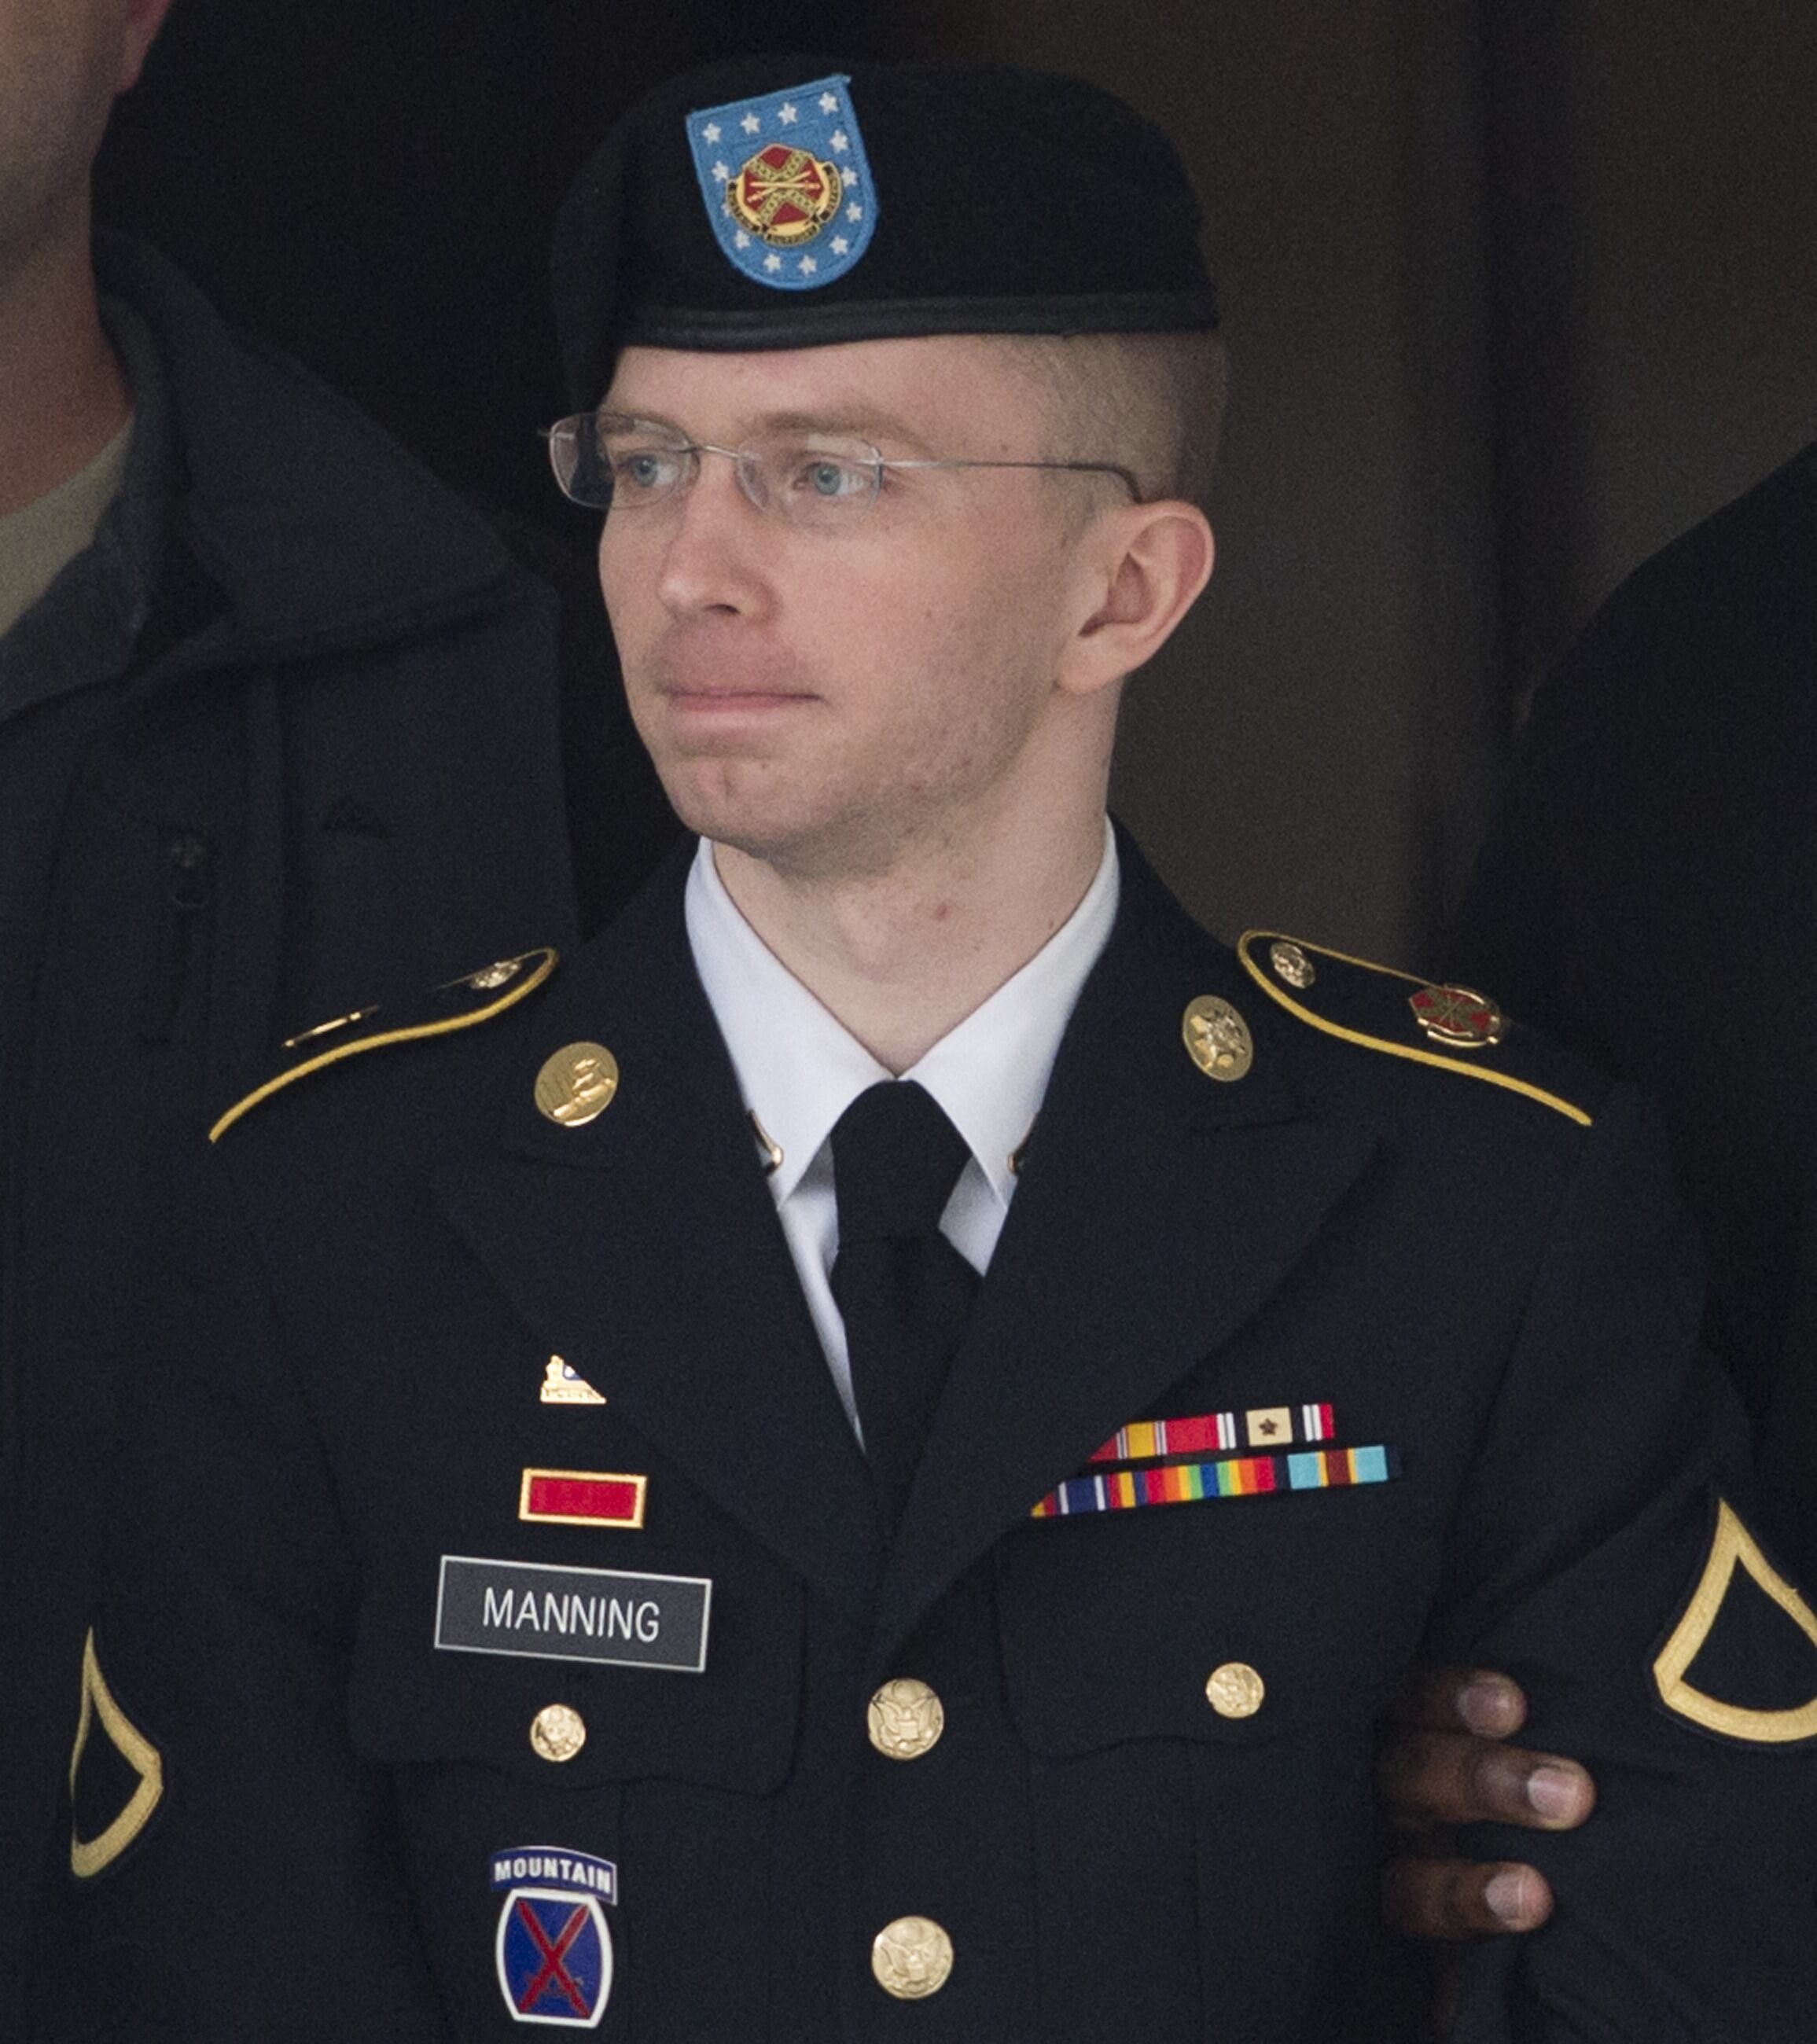 El soldado de primera clase del ejército estadounidense Bradley Manning sale de un tribunal militar estadounidense en Fort Meade, Maryland, el 20 de agosto de 2013. Años después cambió su nombre a Chelsea Manning. (Foto de SAÚL LOEB / AFP).